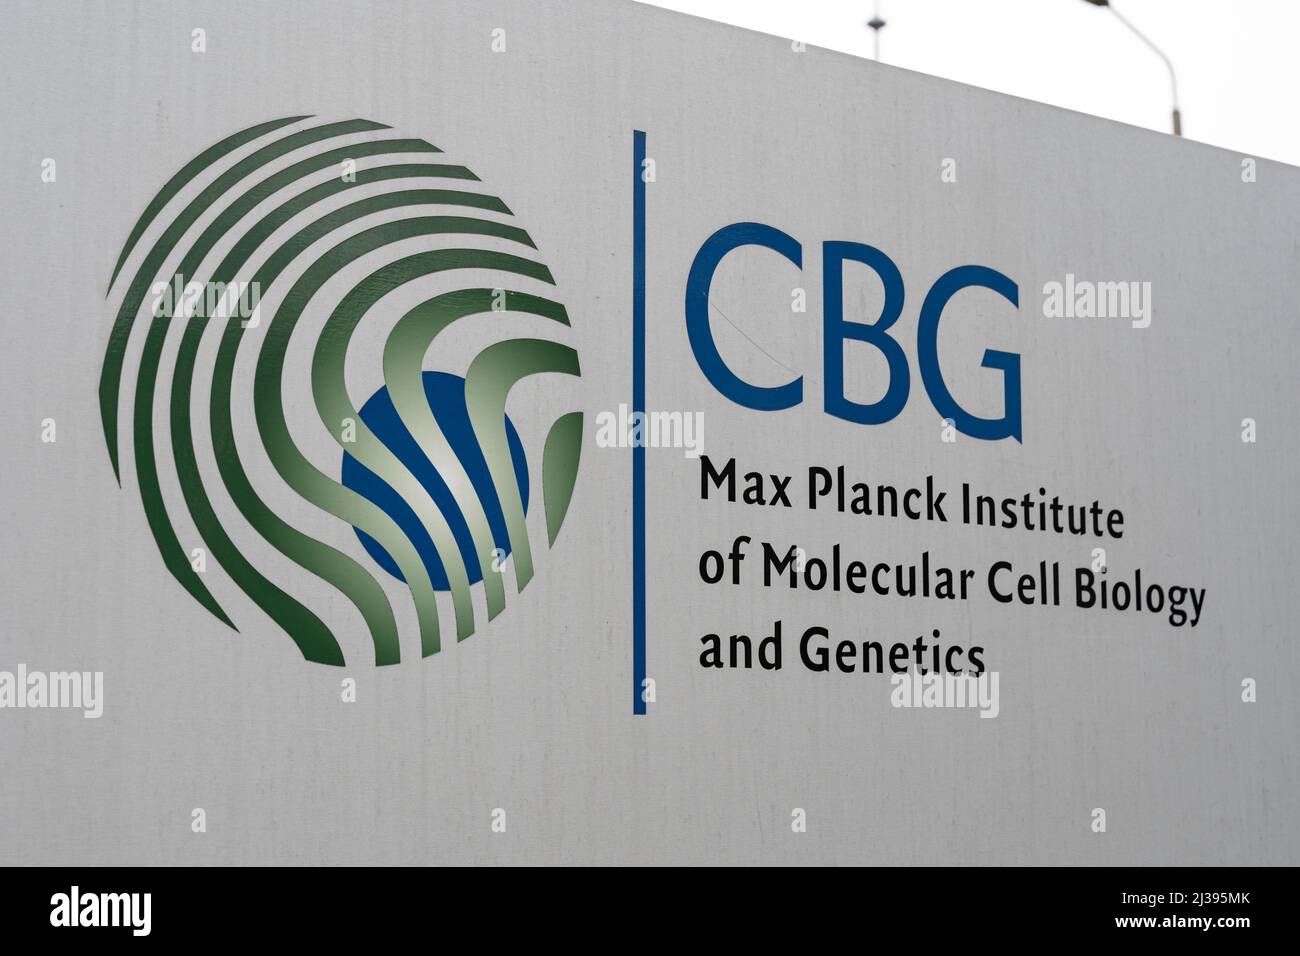 Placa de nombre del Instituto Max Planck de Biología Molecular Celular y Genética de la Ciudad. Signo gris con el logotipo de CBG y letras. Instalaciones de investigación Foto de stock